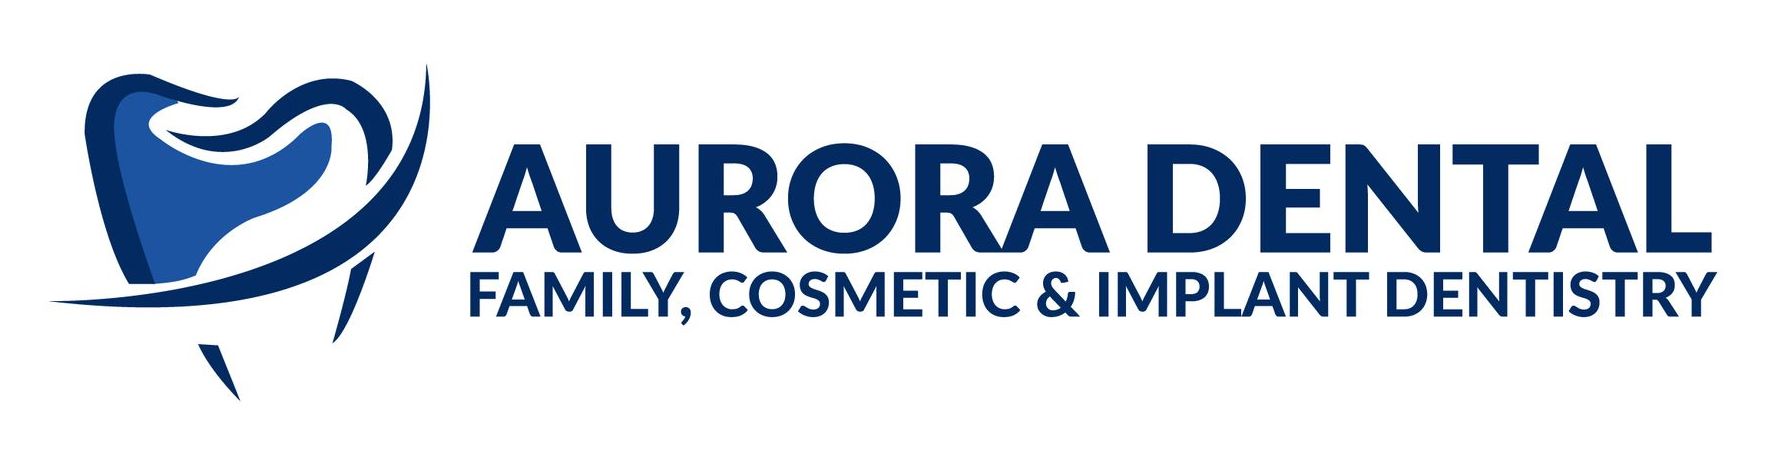 Aurora Dental logo